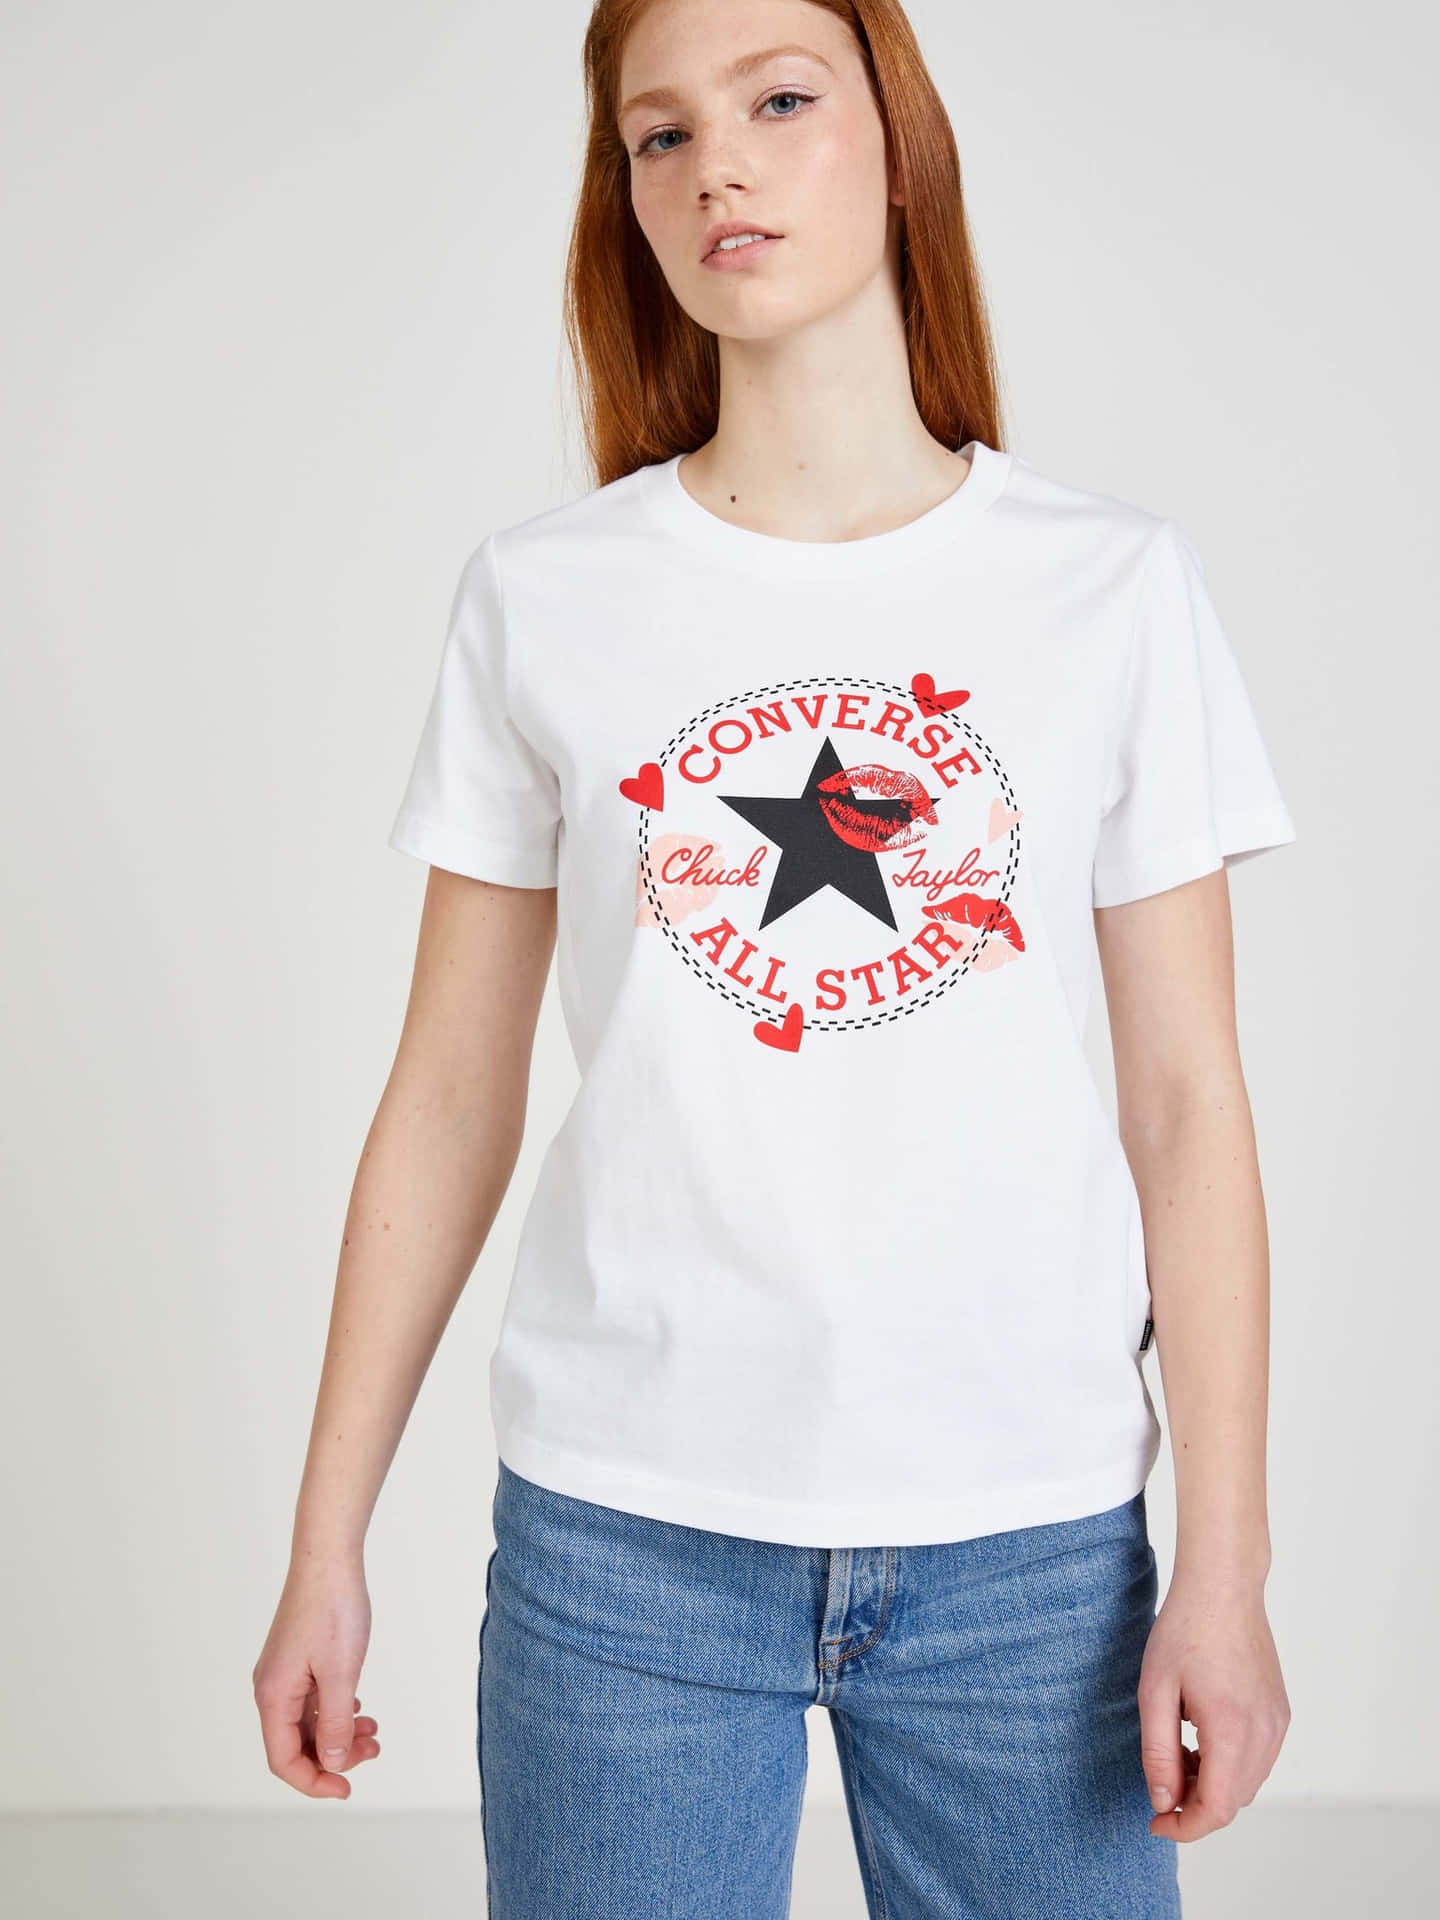 Einefrau, Die Ein Weißes T-shirt Mit Einem Stern Darauf Trägt.